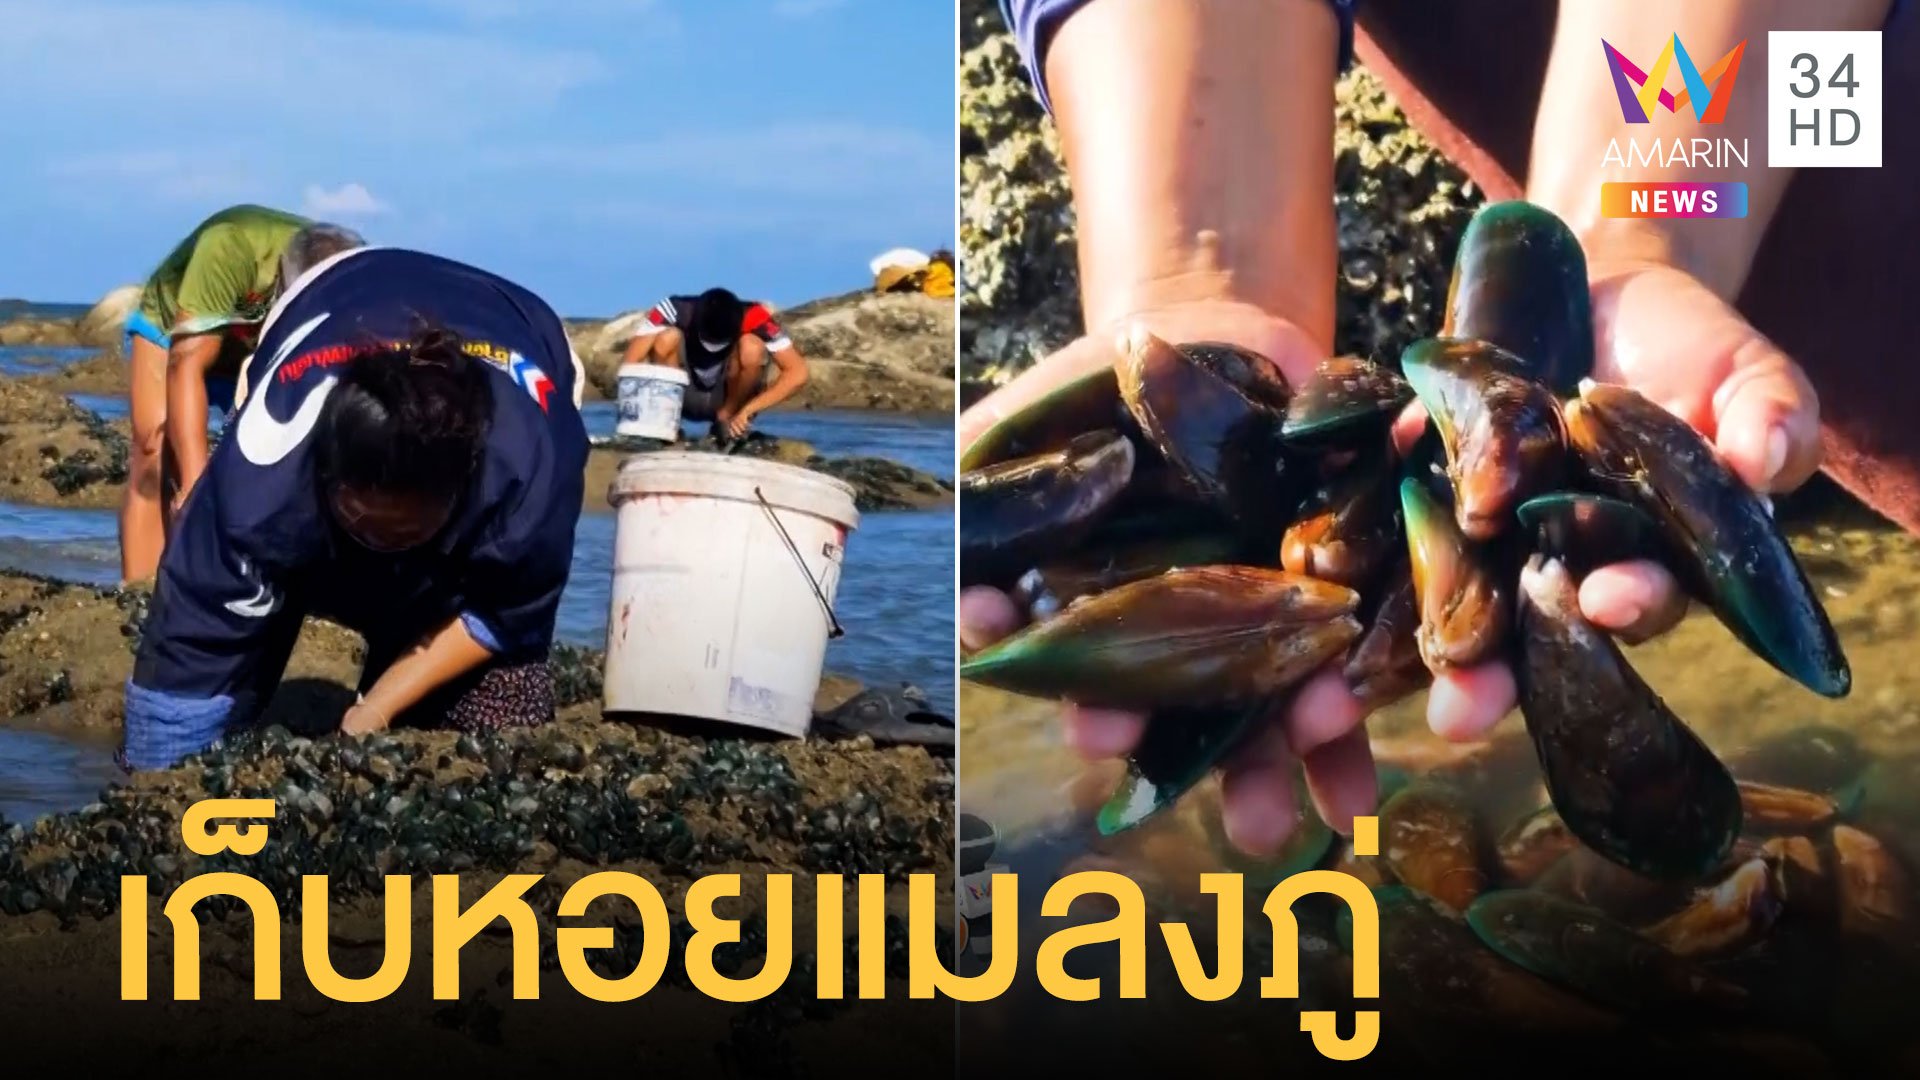 ชาวบ้านแห่เก็บหอยแมลงภู่ หลังน้ำทะเลลงต่ำ | ข่าวเที่ยงอมรินทร์ | 13 เม.ย. 65 | AMARIN TVHD34